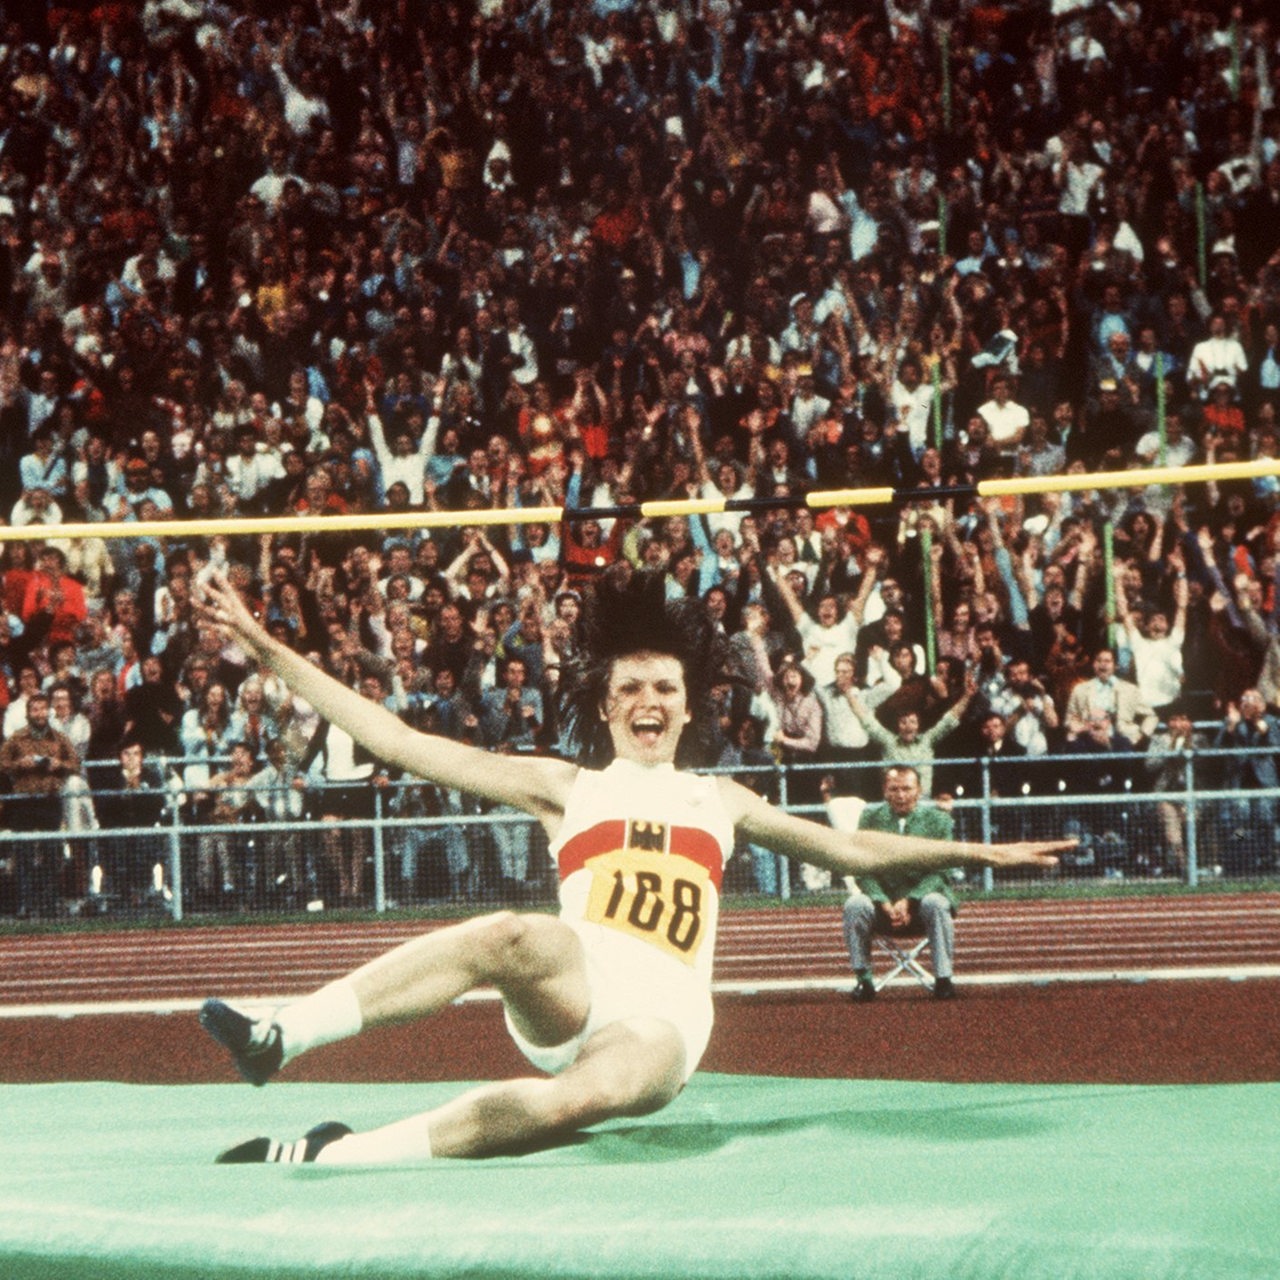 Die 16-jährige bundesrepublikanische Hochspringerin Ulrike Meyfarth jubelt zusammen mit tausenden Zuschauern nach der Landung. Sie gewinnt bei den XX. Olympischen Sommerspielen in München am 04.09.1972 sensationell die Goldmedaille mit neuem Weltrekord von 1,92 m.